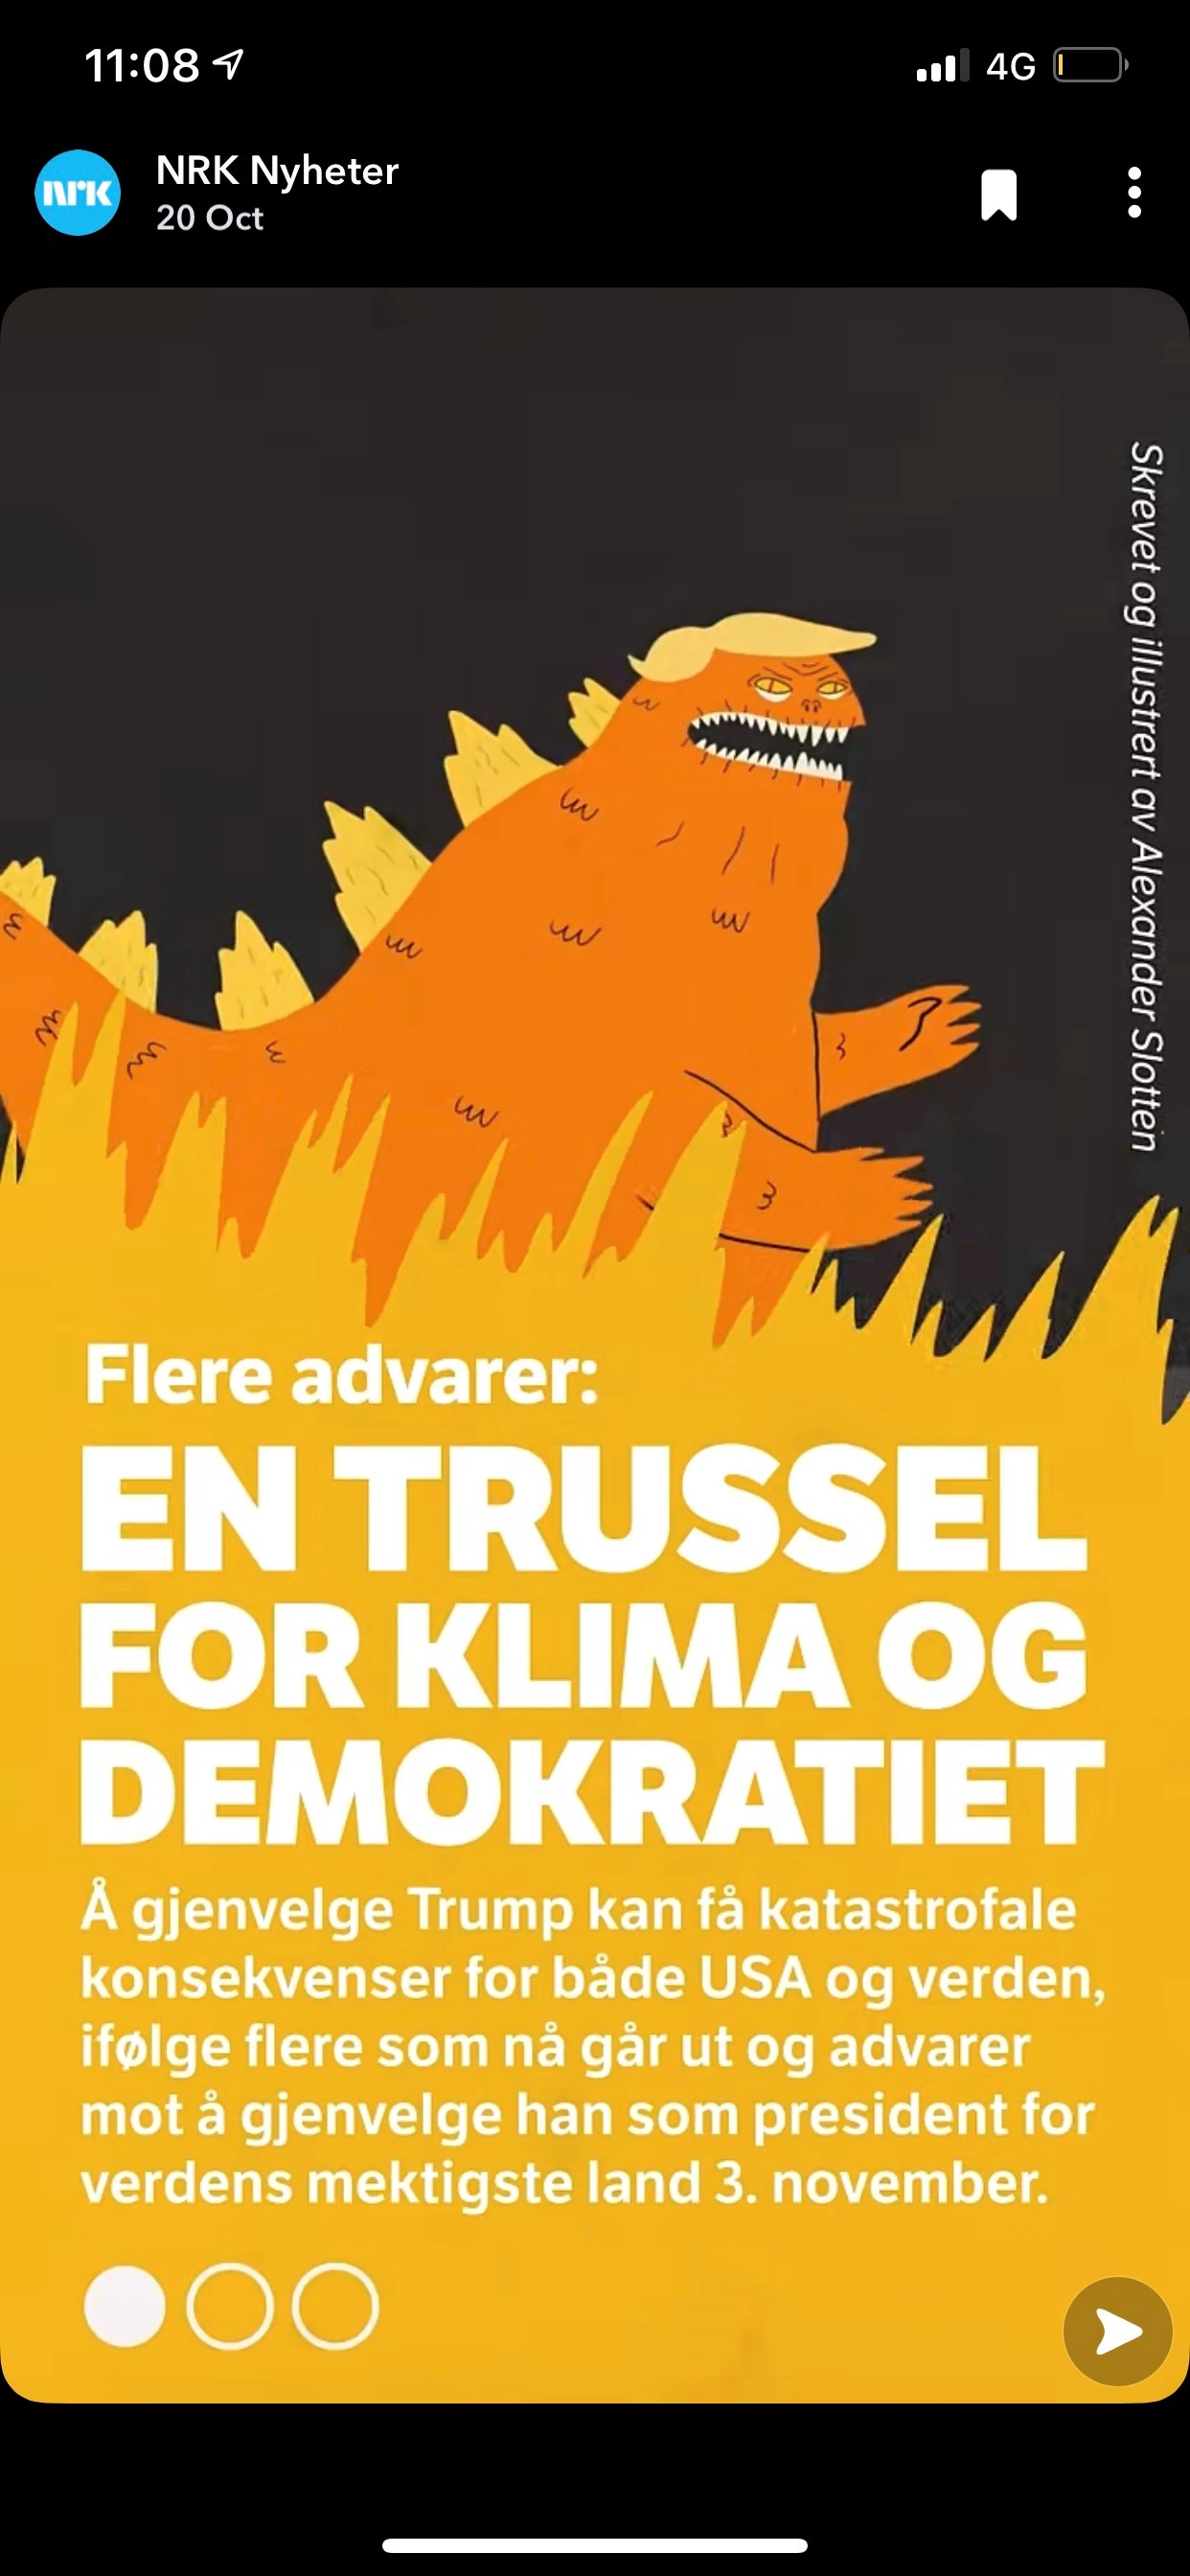 En trussel for klima og demokratiet, Alexander Slotten for NRK Nyheter.